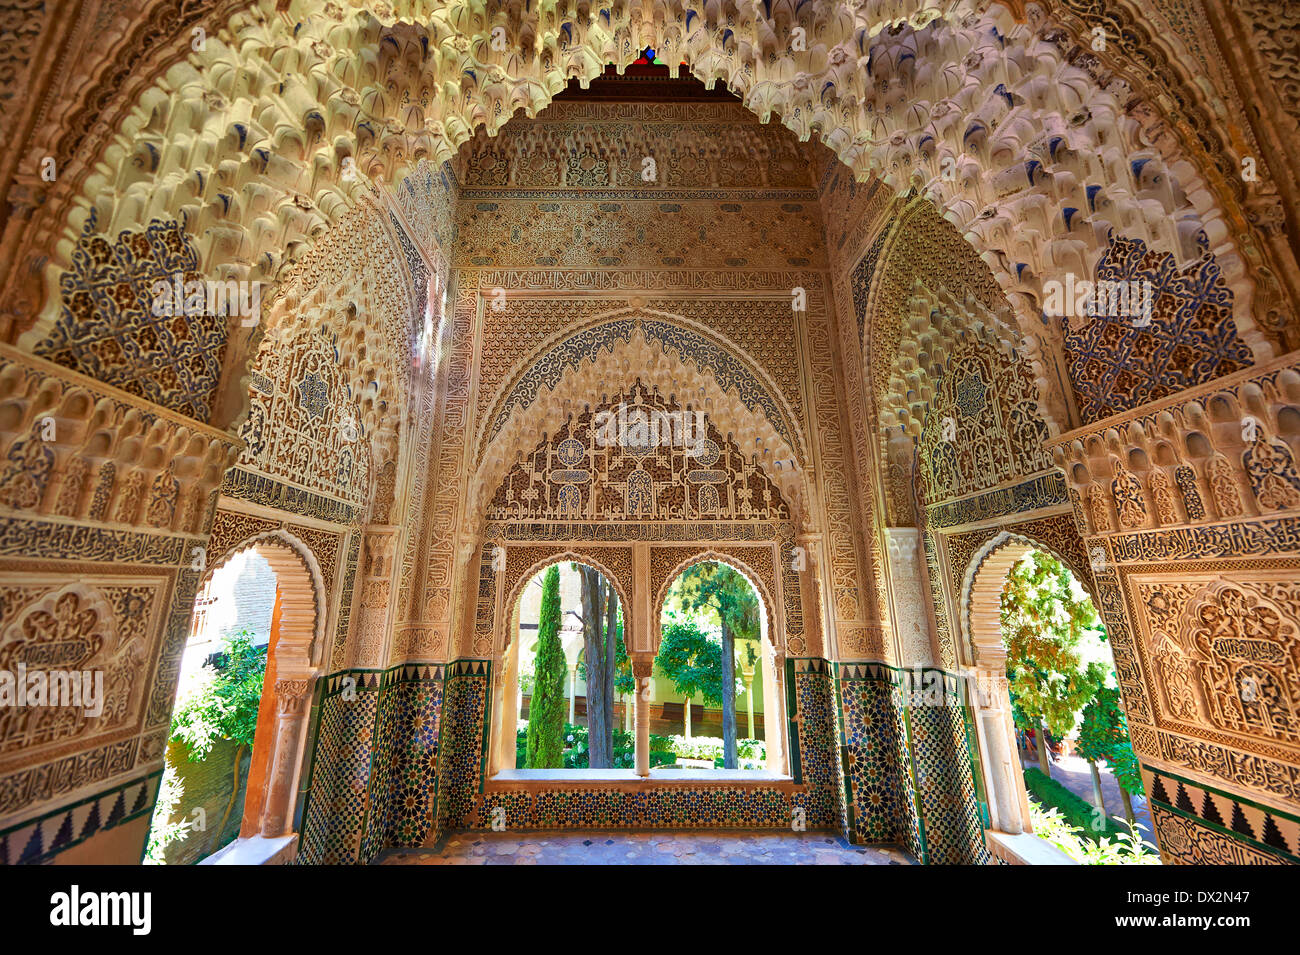 Arabesque maurischen Tropfsteinhöhle oder Morcabe Architektur von Palacios Nazaries, Alhambra. Granada, Andalusien, Spanien. Stockfoto